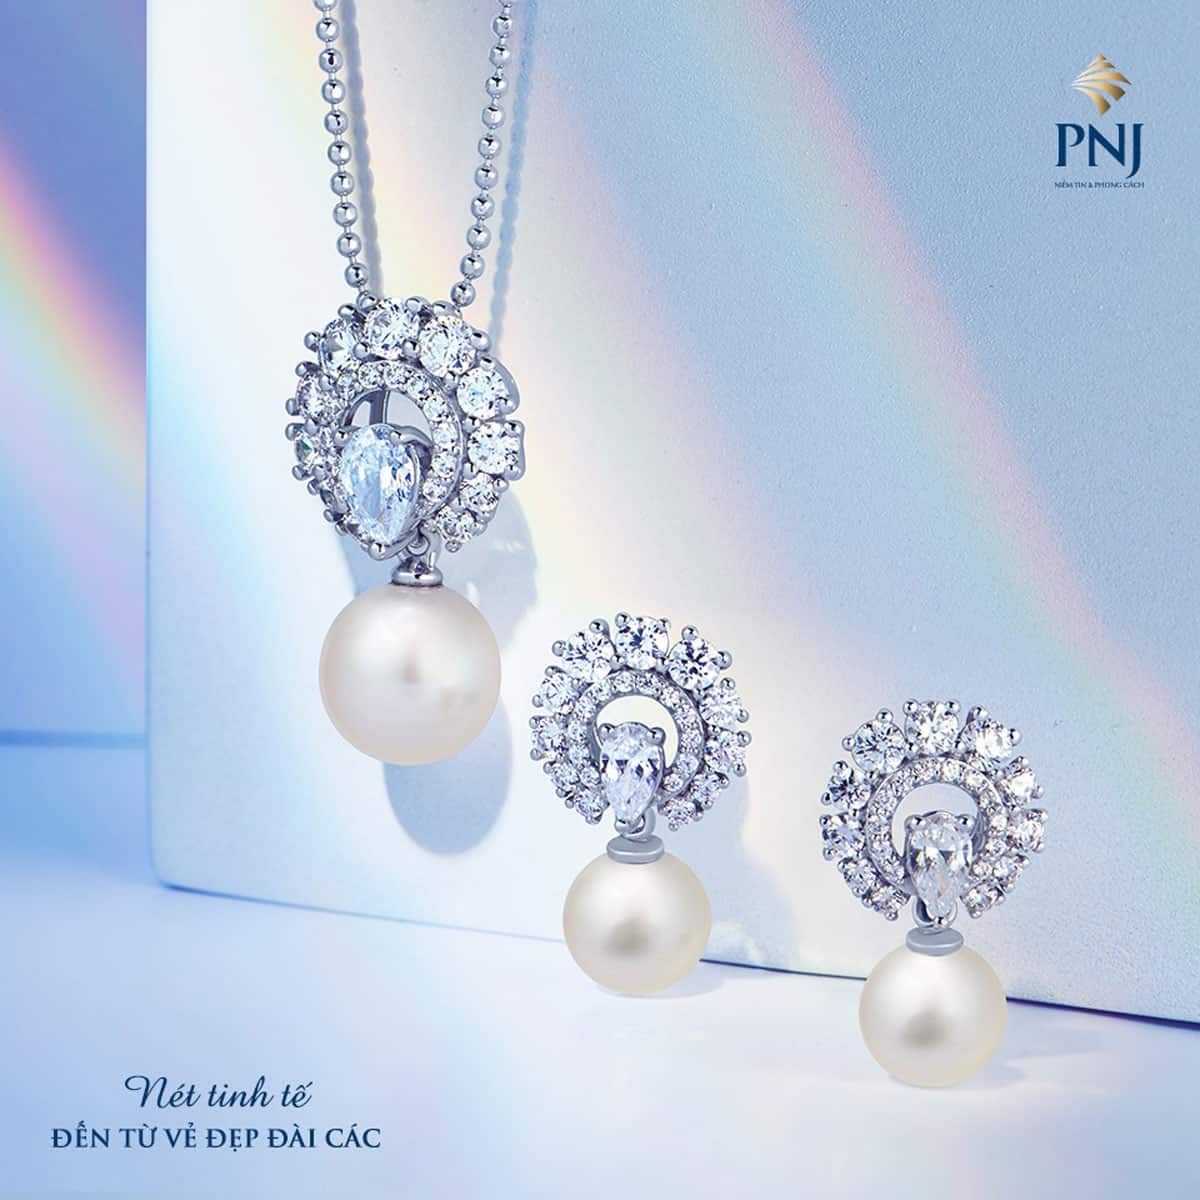 PNJ có áp dụng thu mua xác trang sức vàng trắng